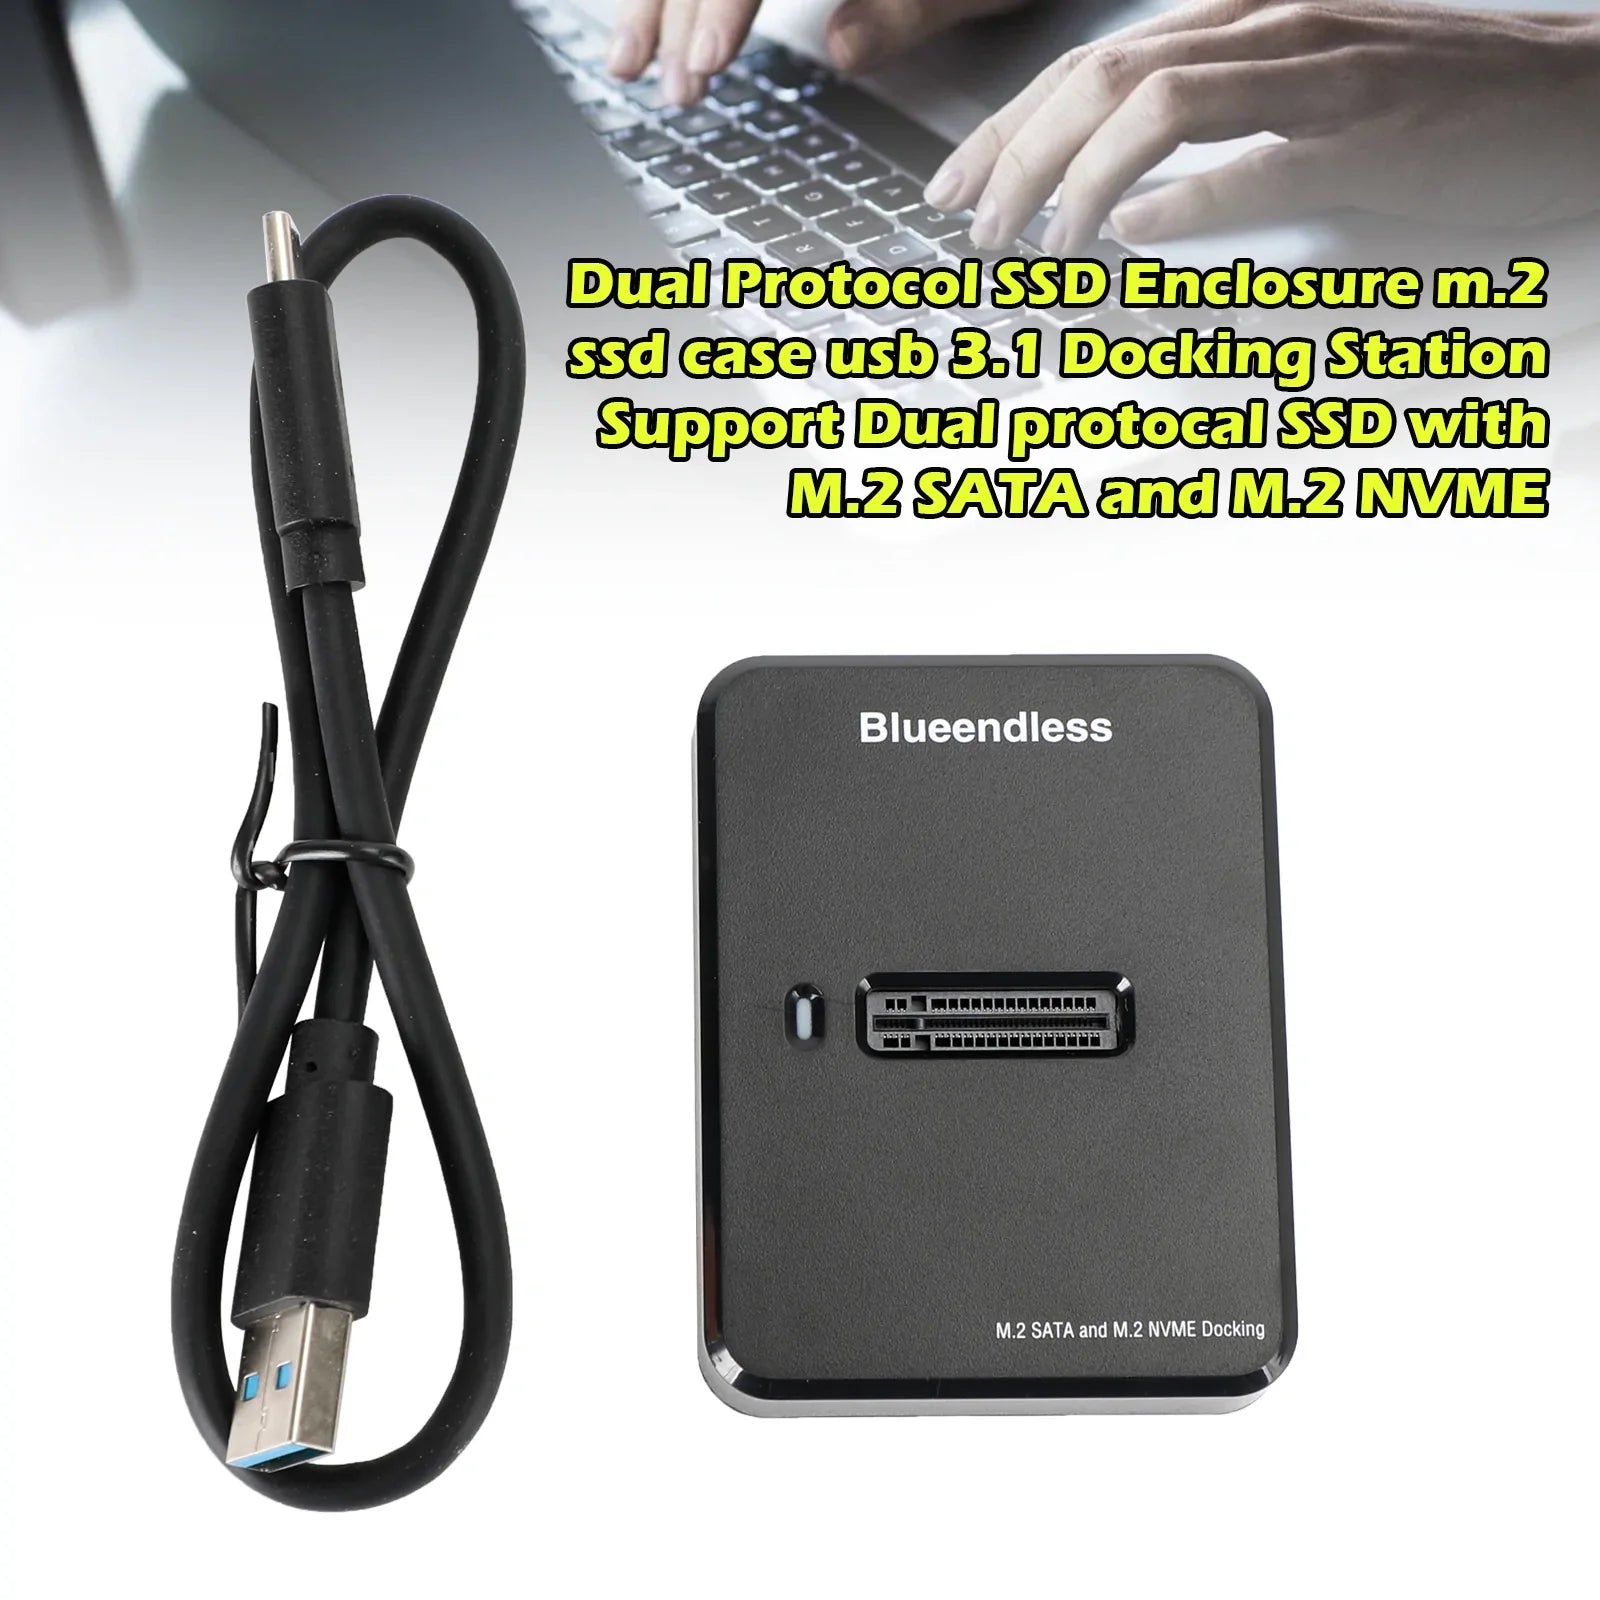 Supporta la docking station SSD USB3.1 a doppio protocollo con M.2 SATA e M.2 NVME